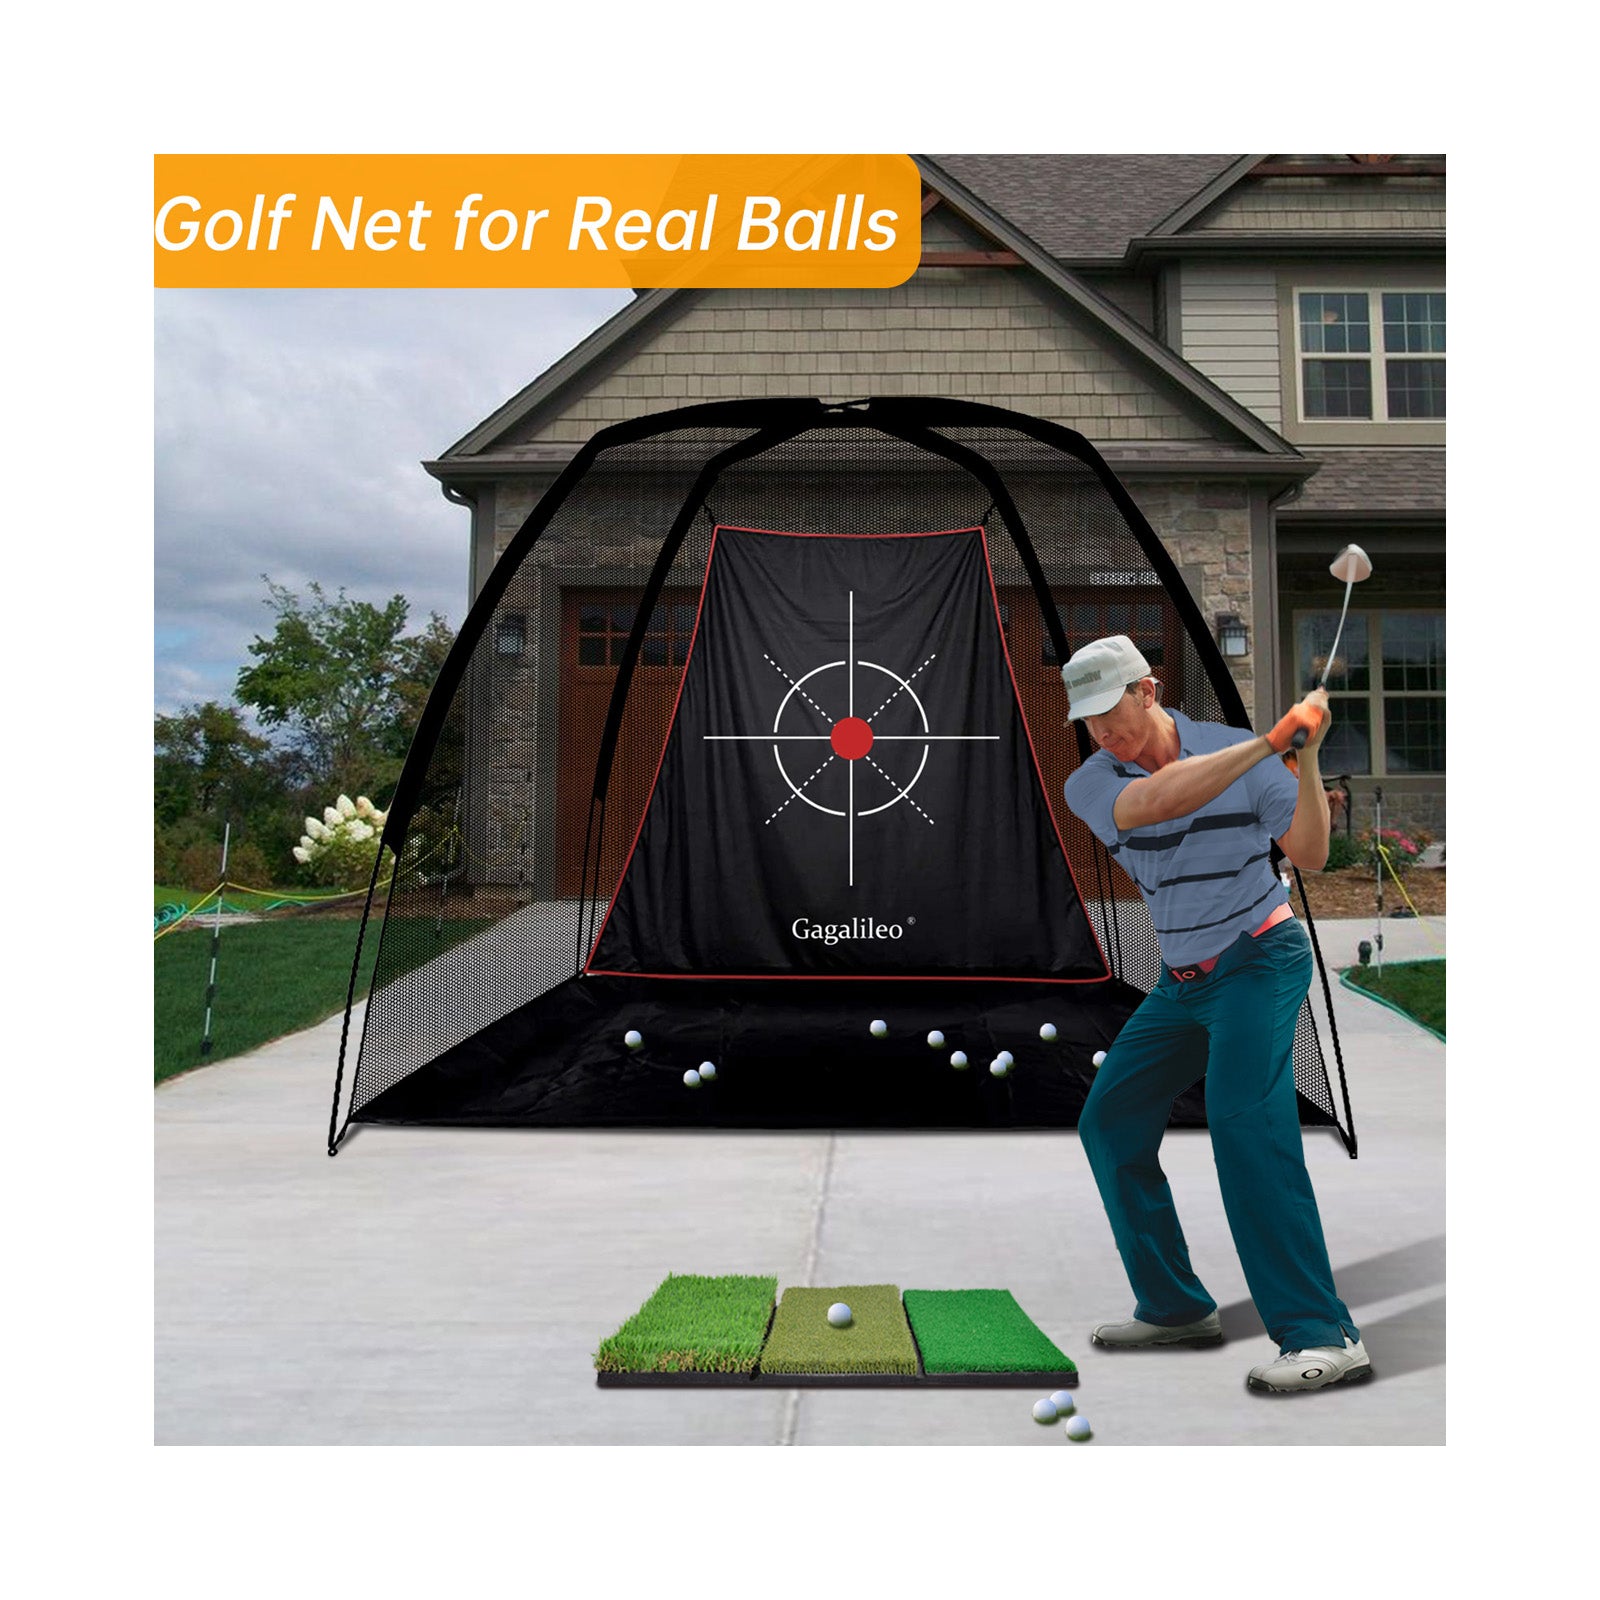 Red de golf Red de práctica de golf Red de golf para patio trasero Redes de golf para uso en interiores | 8'X 6'X 5'| Objetivo profesional | deportes galileo